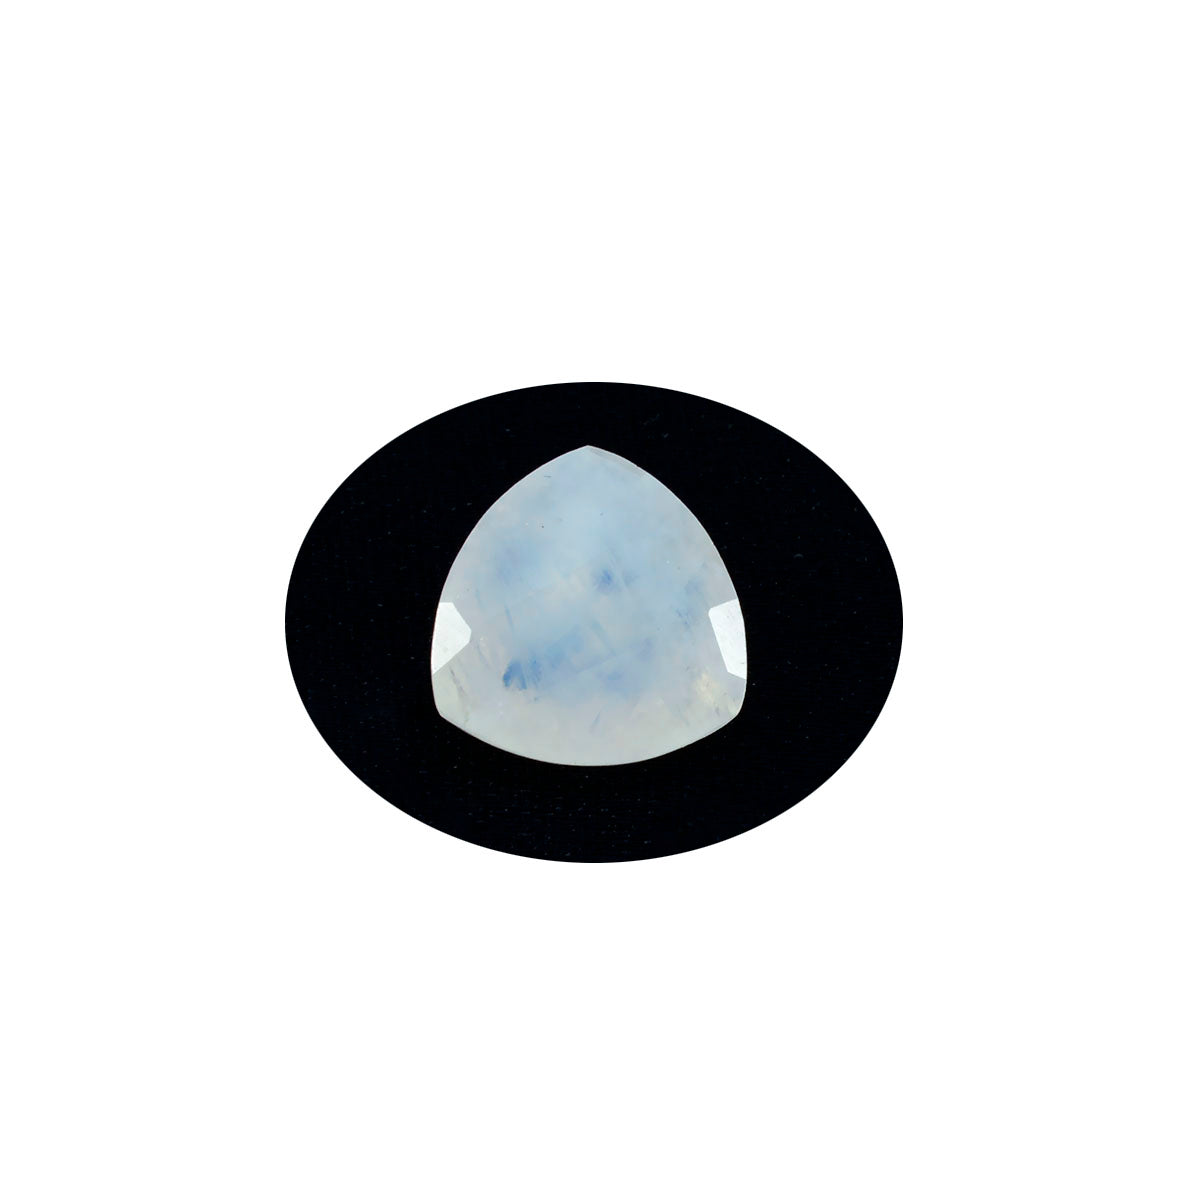 Riyogems 1PC White Rainbow Moonstone Faceted 6x6 mm Trillion Shape astonishing Quality Stone